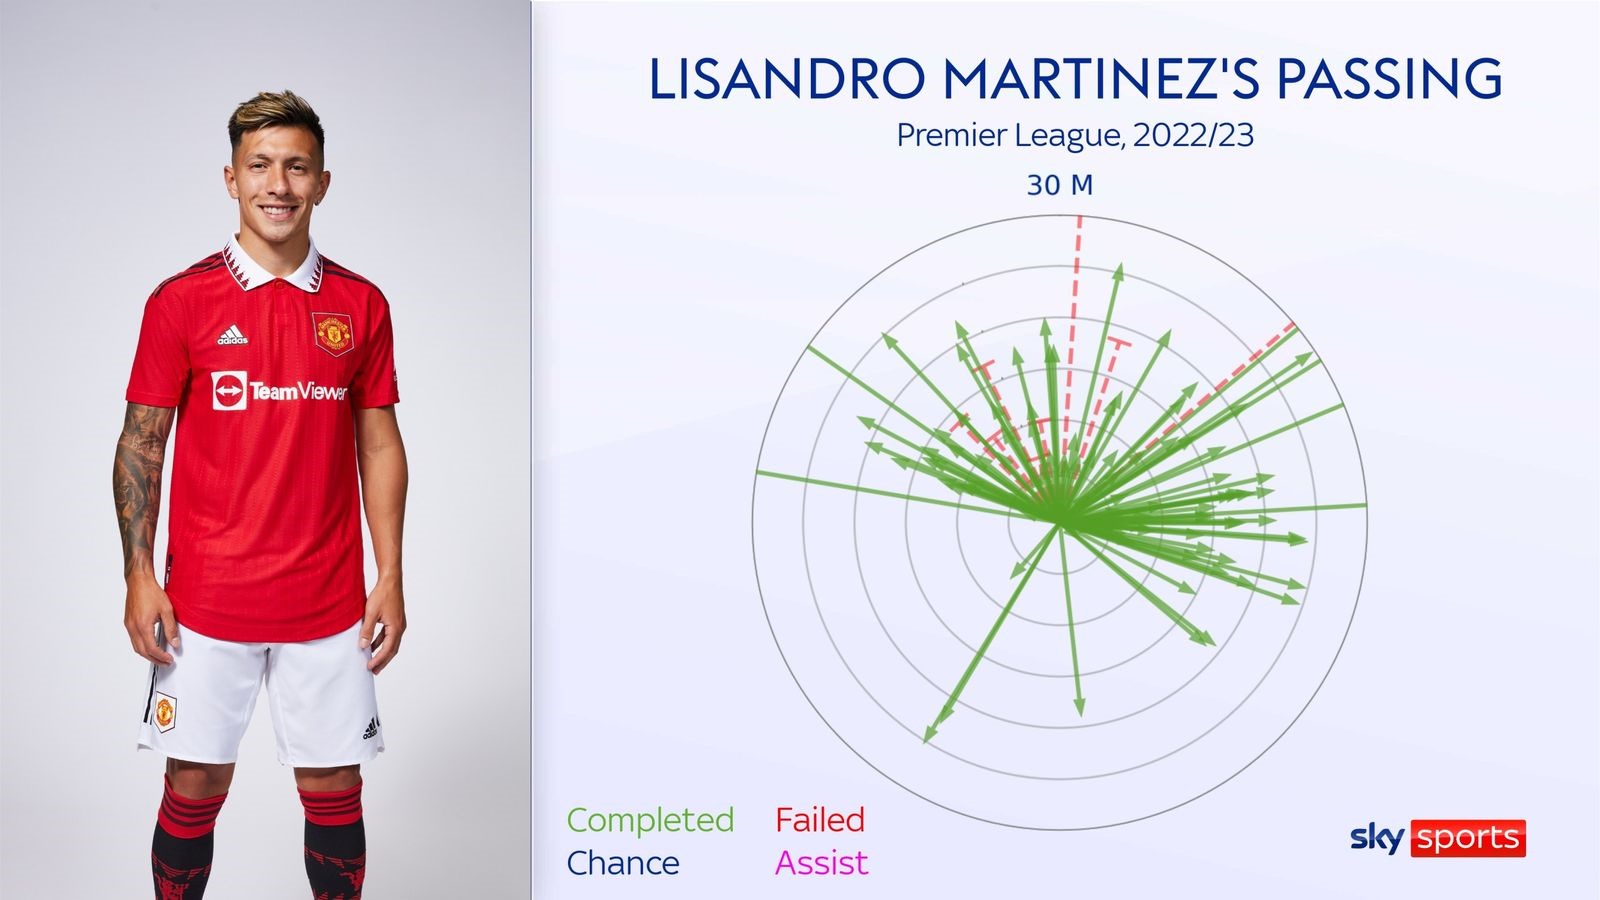 Biểu đồ về hiệu quả của các đường chuyền đến từ Martinez sau 2 vòng đầu Premier League. Ảnh: Sky Sports